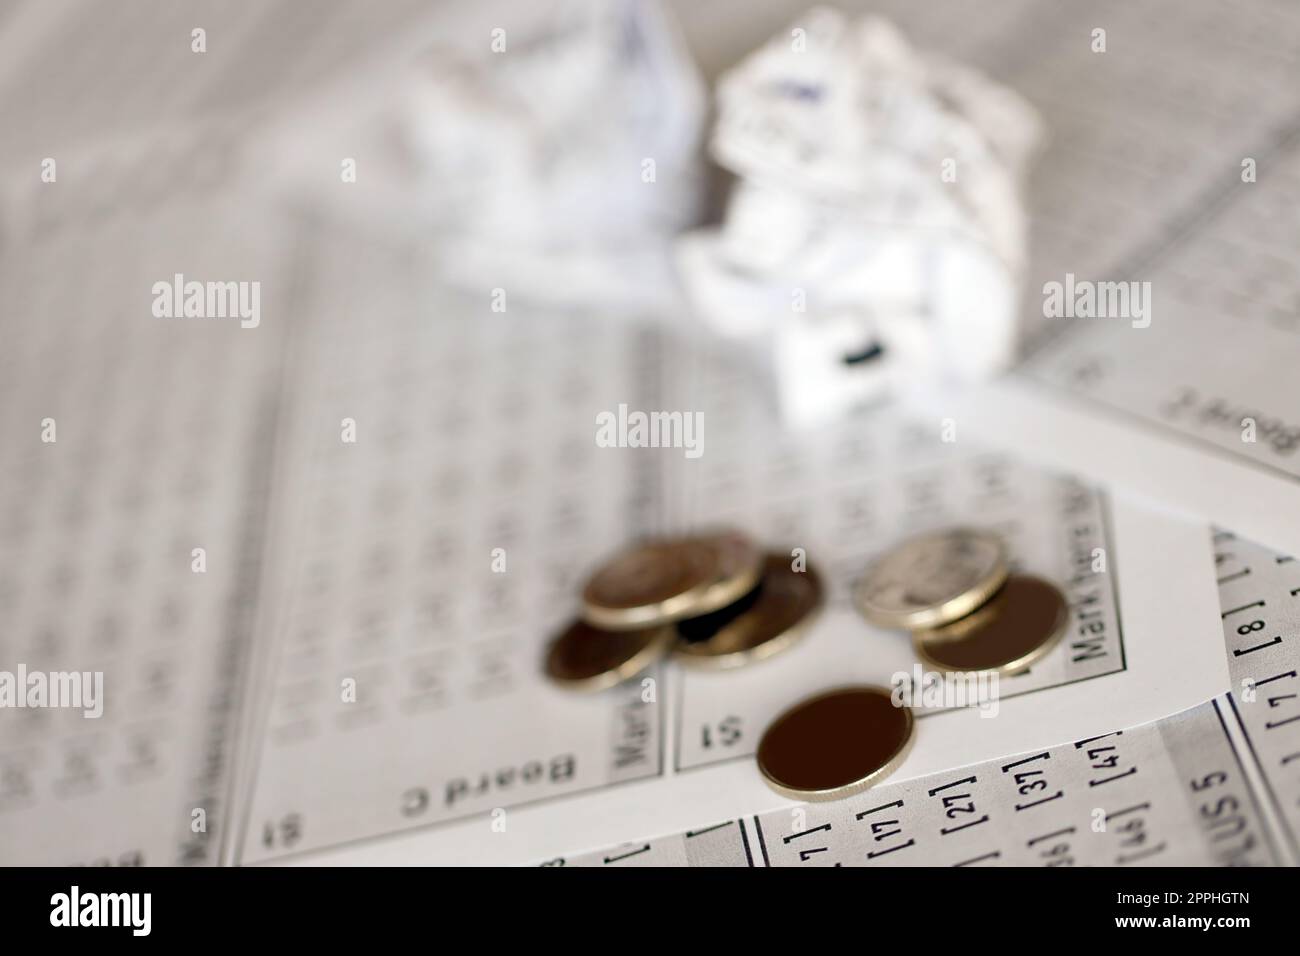 Billets de loterie froissés comme symbole de la perte du jeu de loterie. Résultats de jeu malchanceux. Malheur Banque D'Images